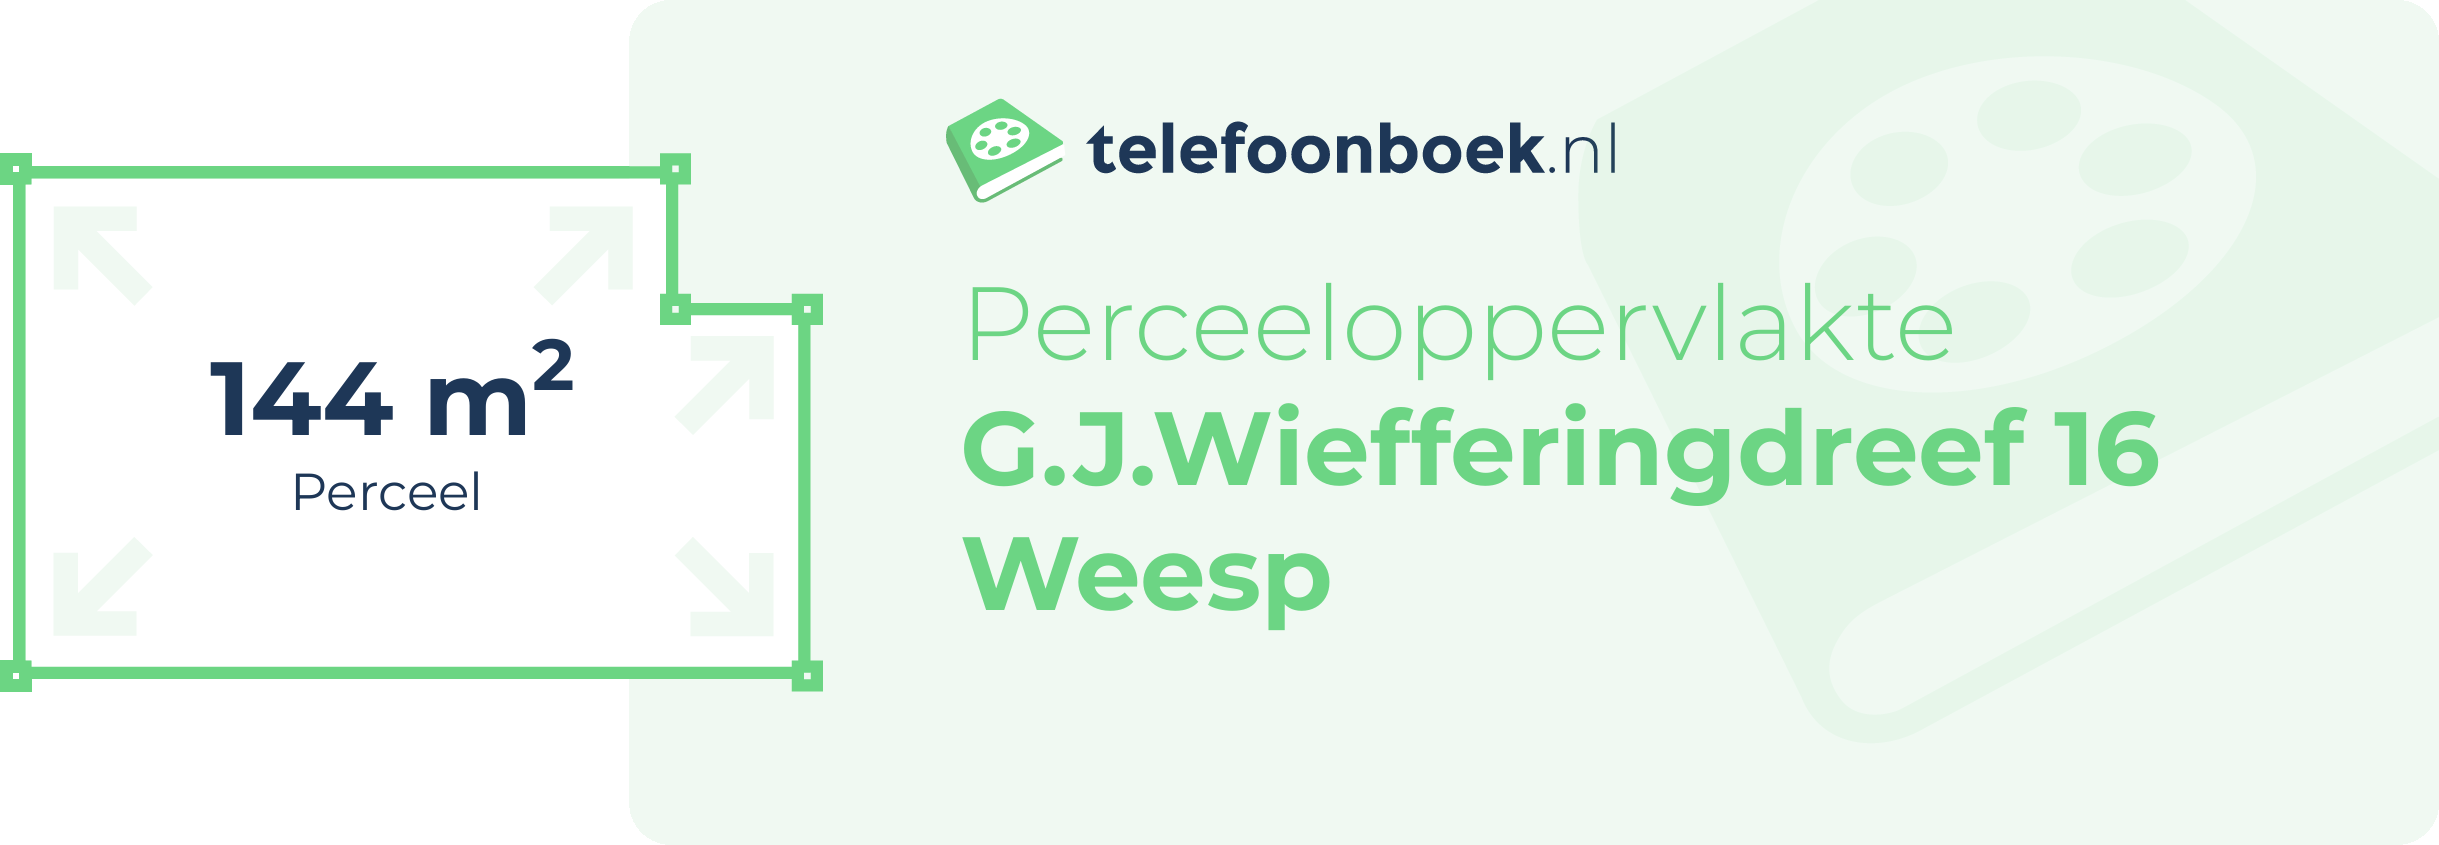 Perceeloppervlakte G.J.Wiefferingdreef 16 Weesp